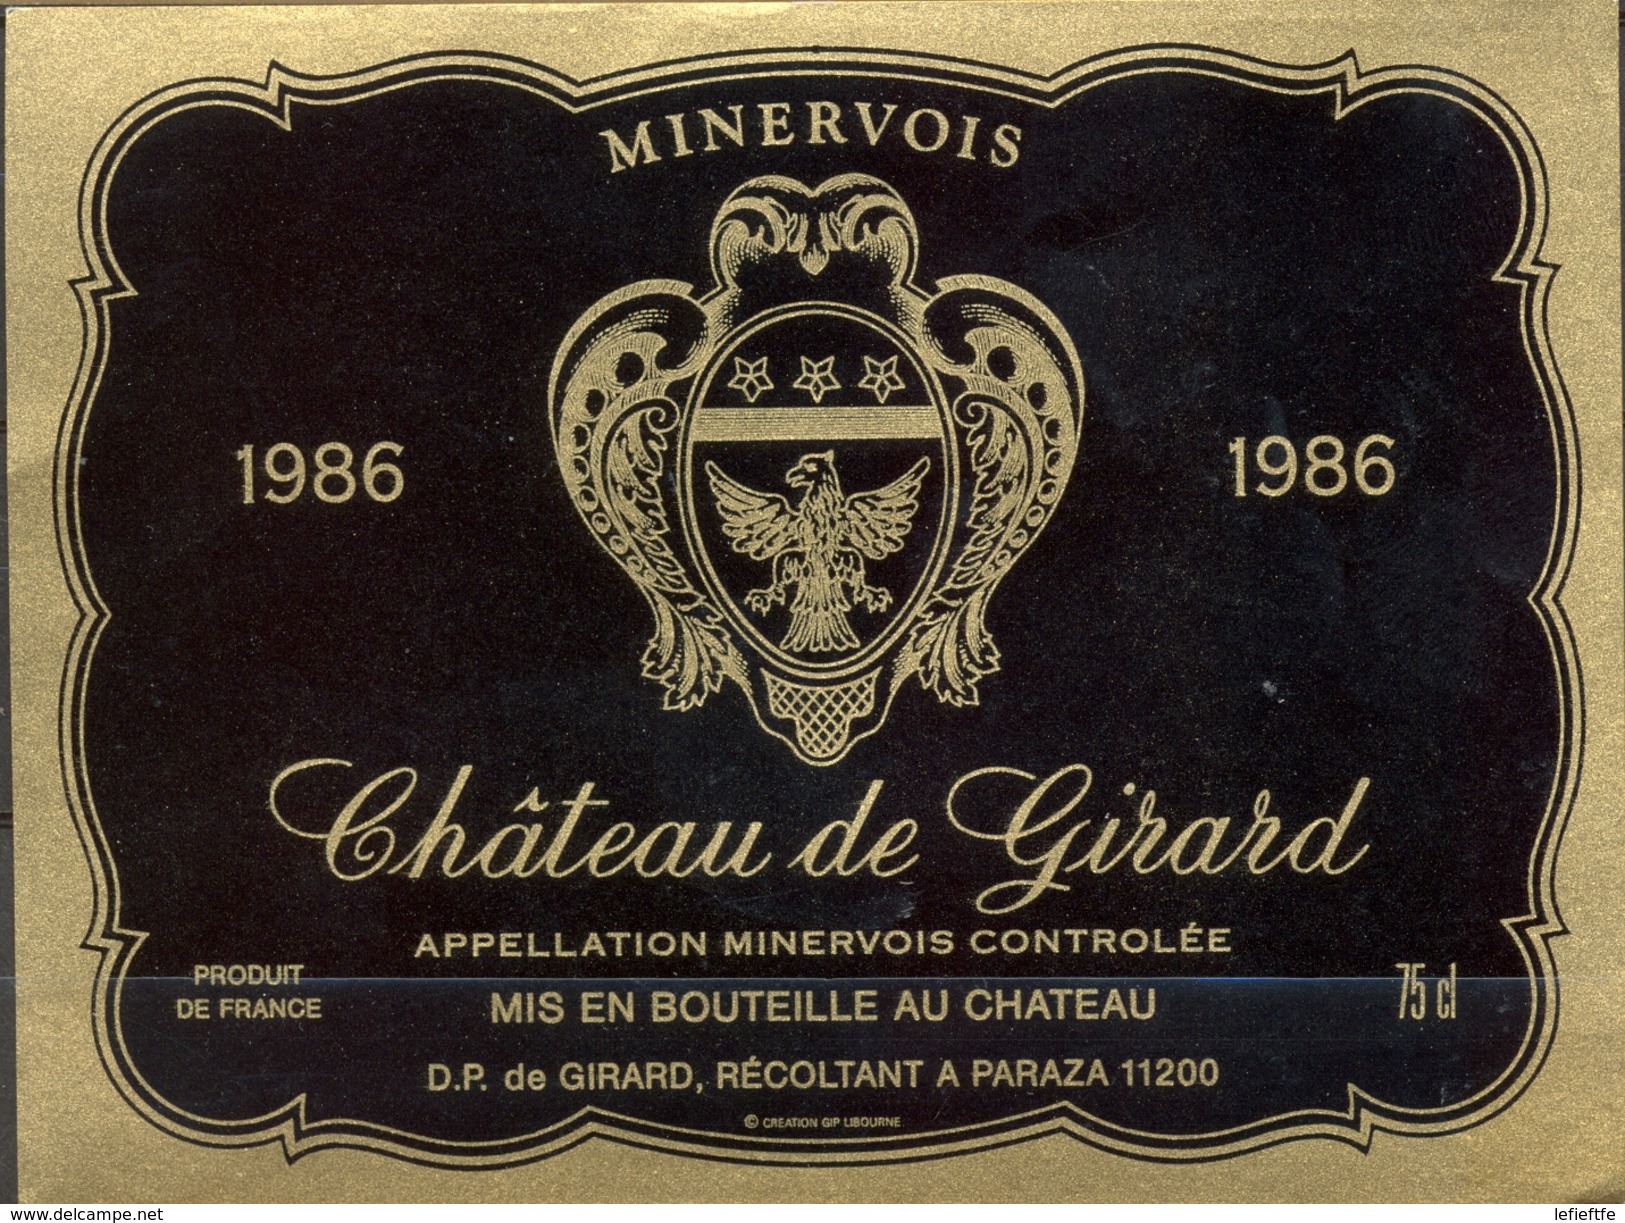 491 - France - 1986 - Minervois - Château De Girard - D.P. De Girard Récoltant à Paraza 11200 - Vino Tinto